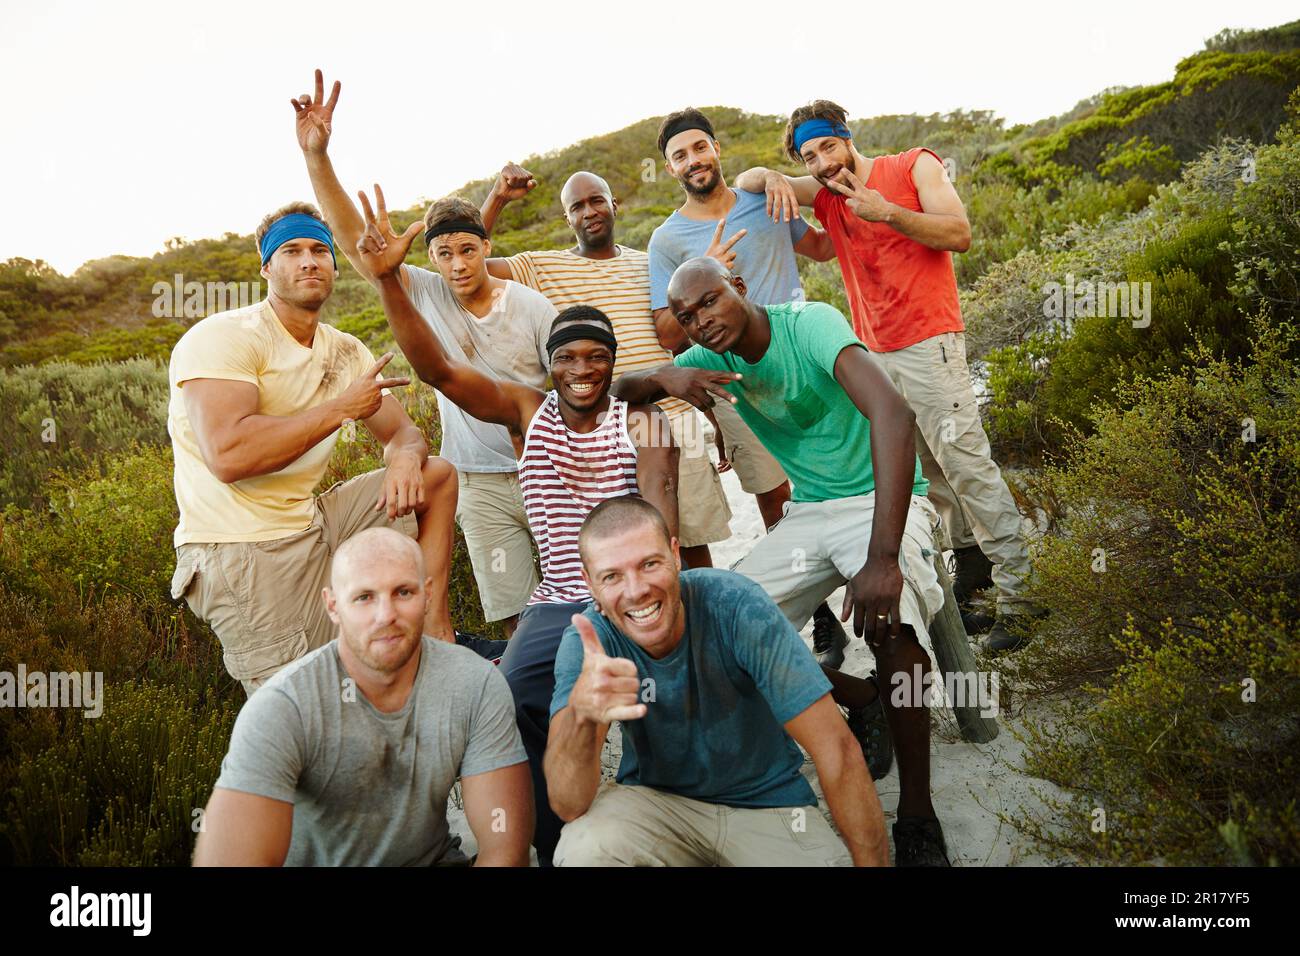 Sono sopravvissuti al campo di stivali. Ritratto di un gruppo di amici sportivi maschi sopravvissuti al bootcamp. Foto Stock